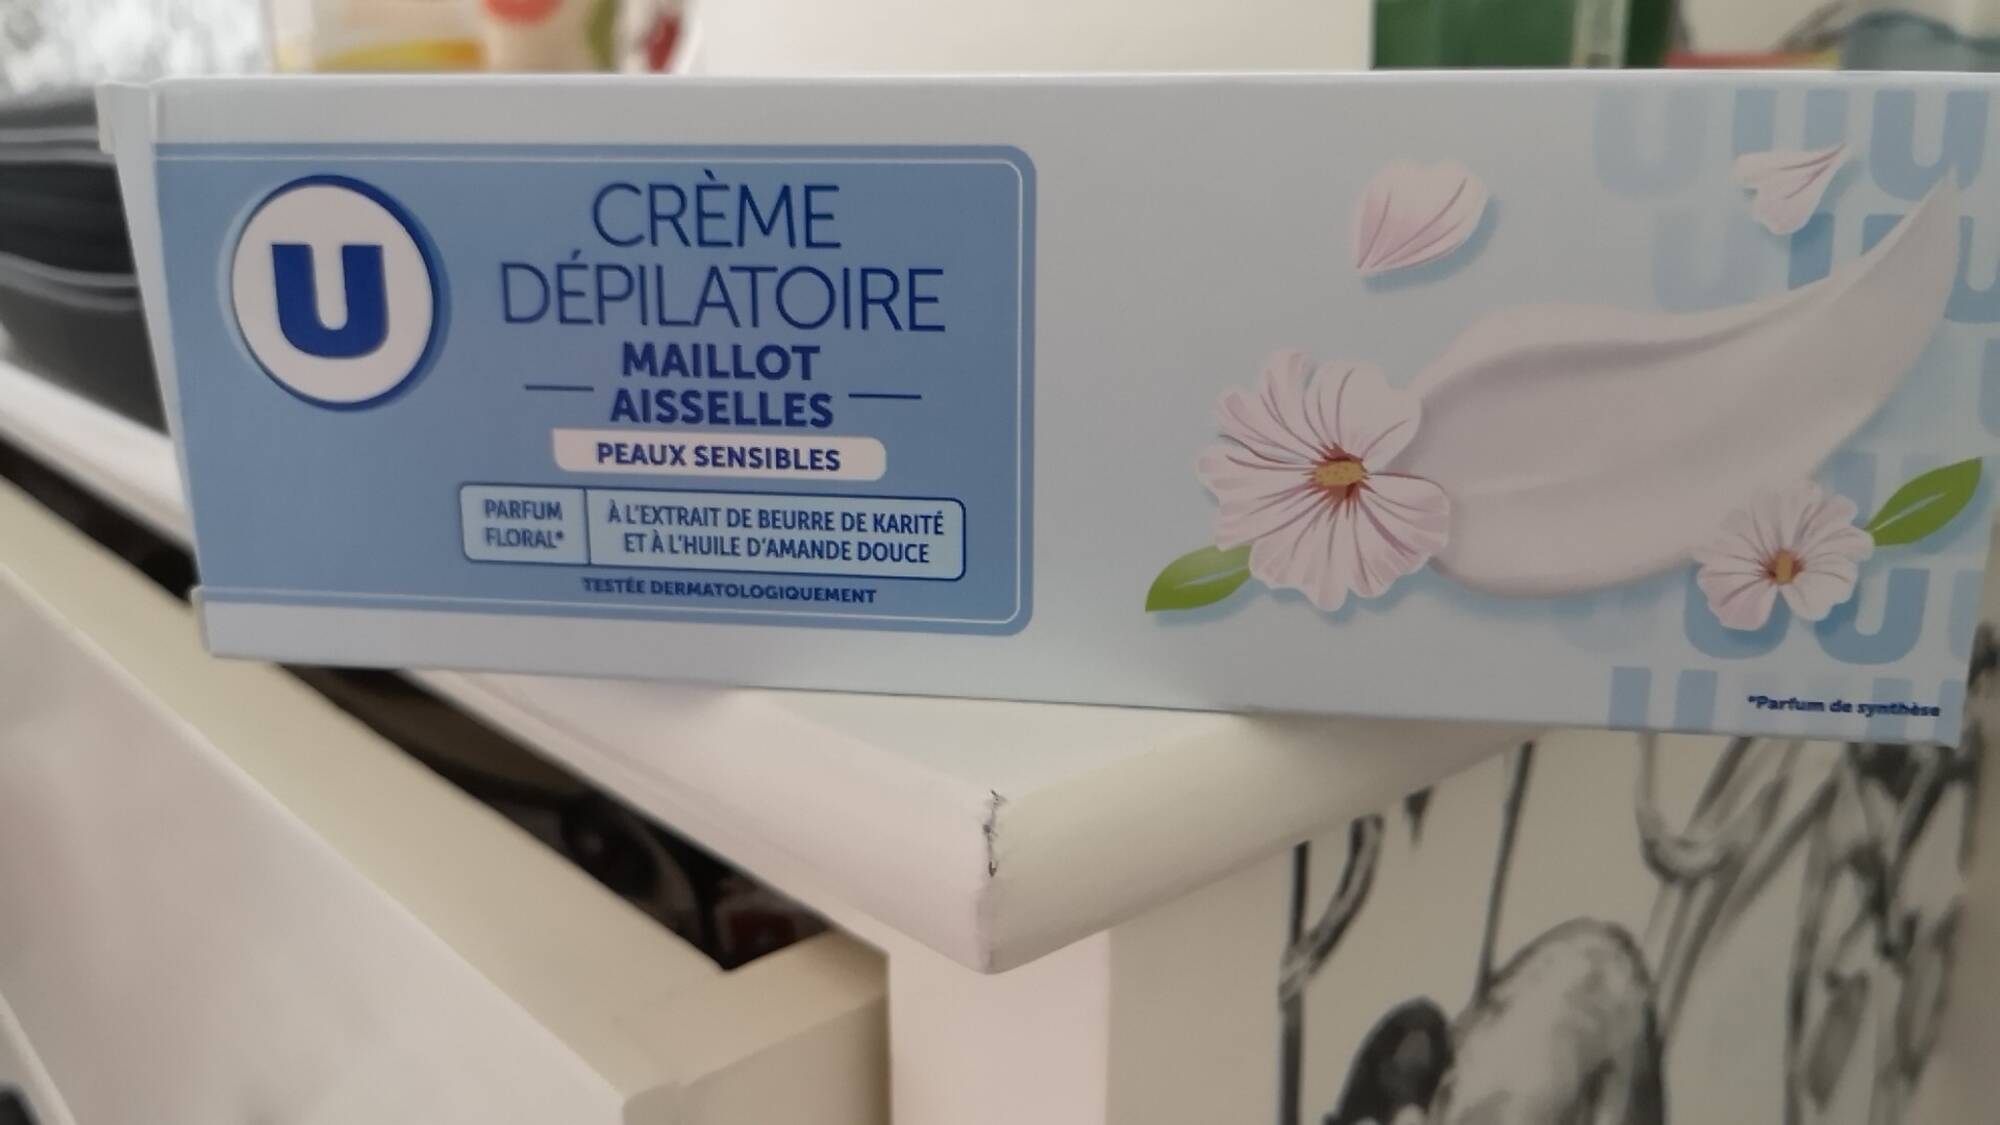 BY U - MAGASINS U - Peaux sensibles - Crème dépilatoire